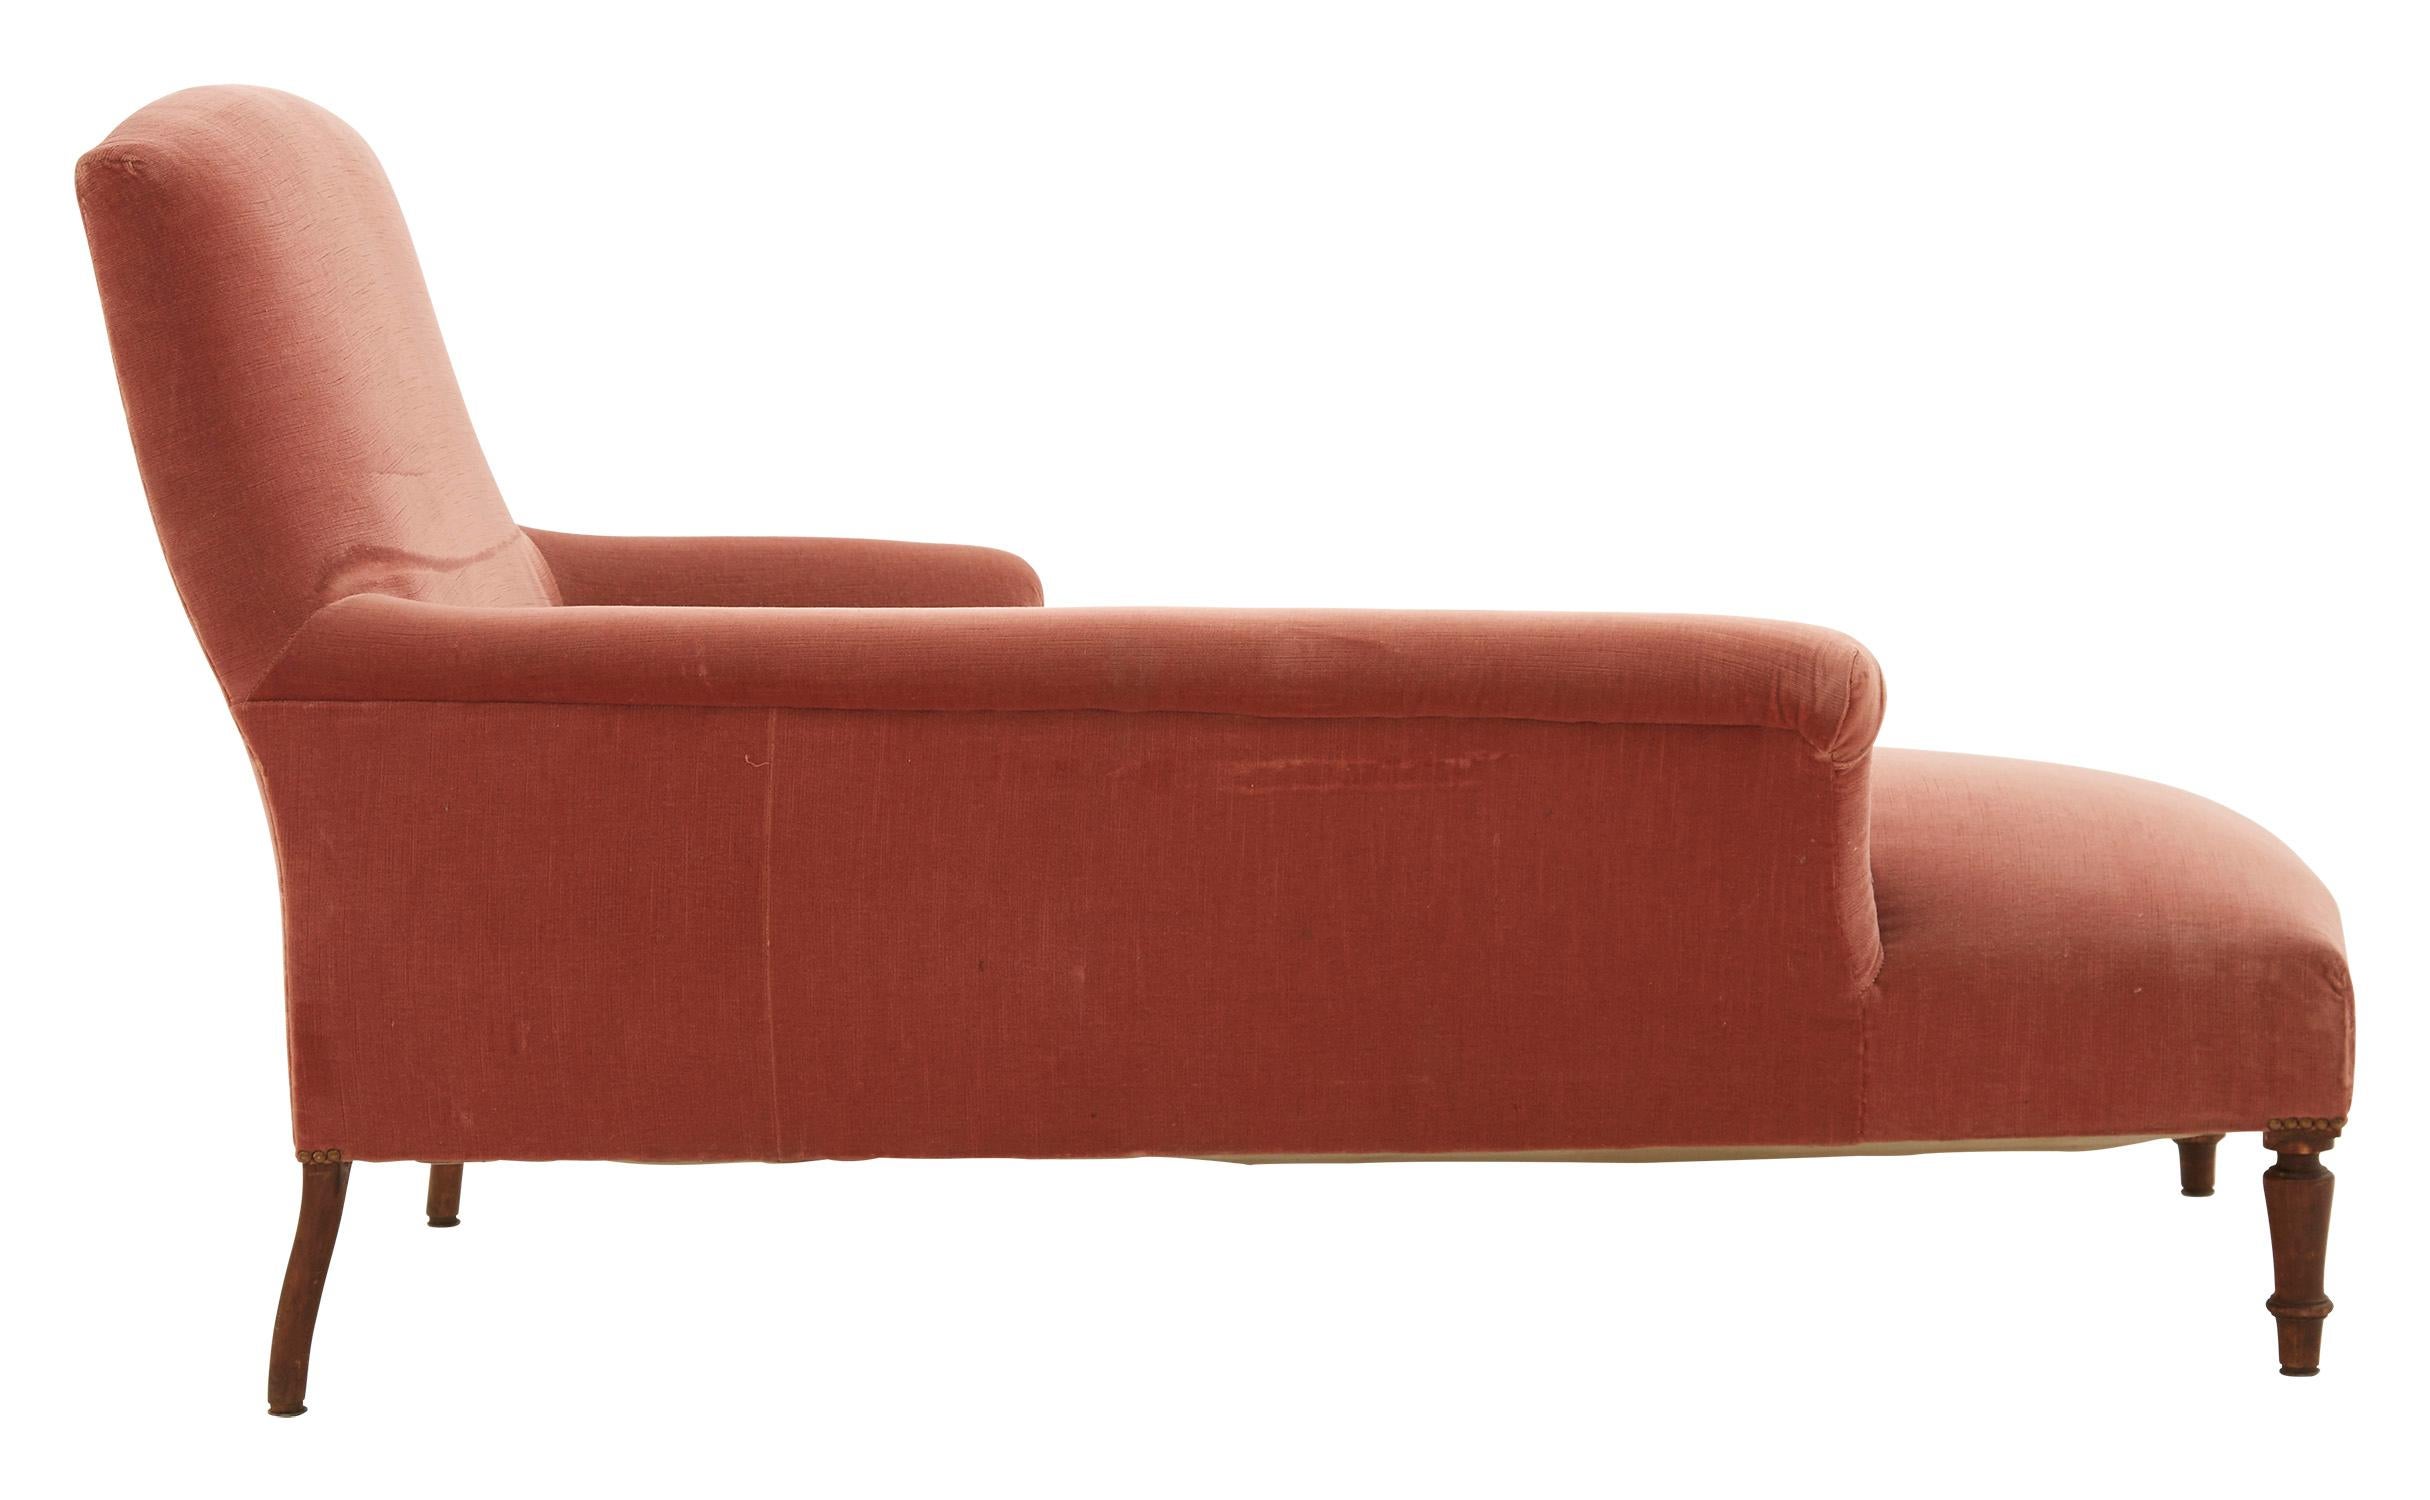 Late 19th Century Pink Velvet Chaise Lounge (Französisch)